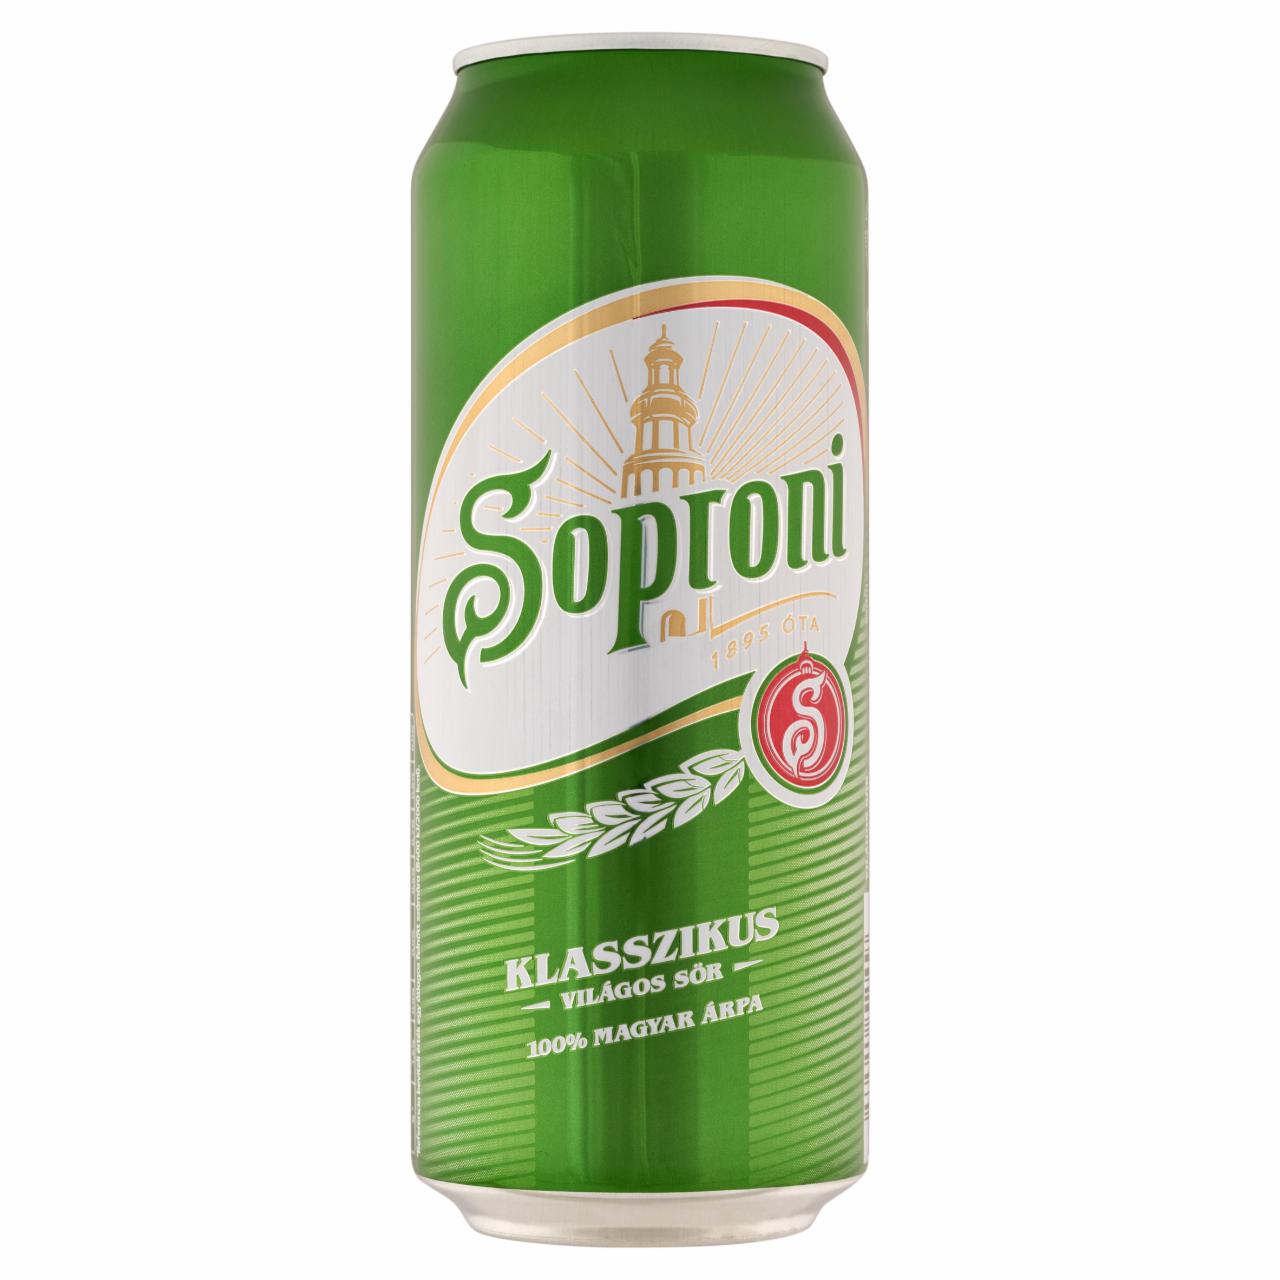 Képek - Soproni Klasszikus világos sör 4,5% 0,5 l 